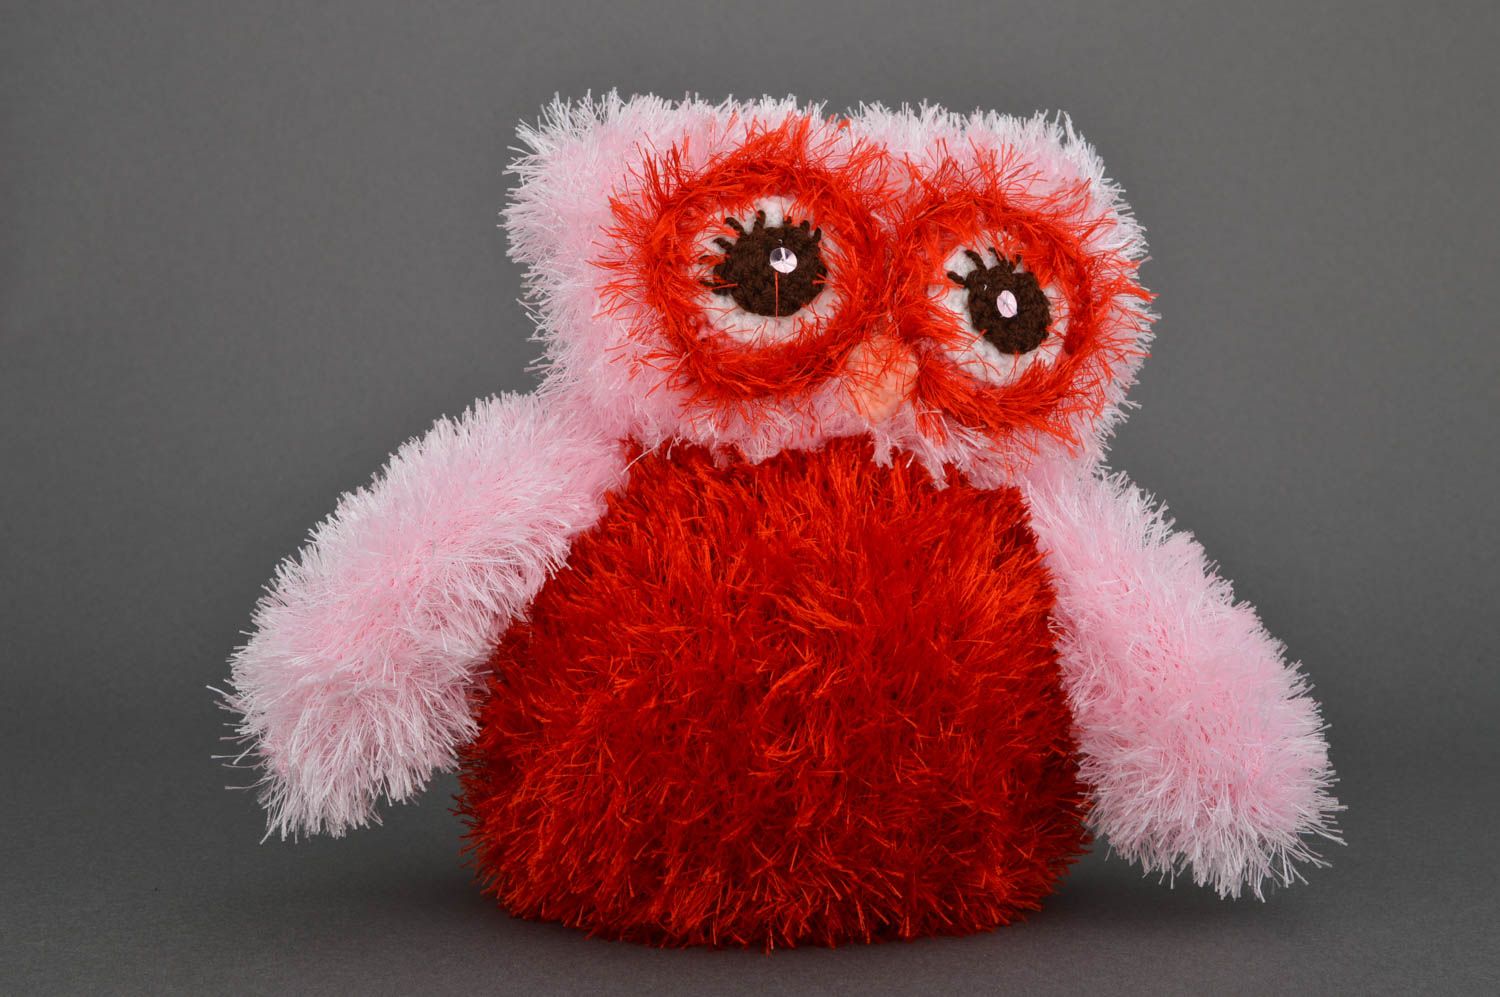 Игрушка сова игрушка ручной работы из хлопка интересный подарок Красное брюшко фото 3